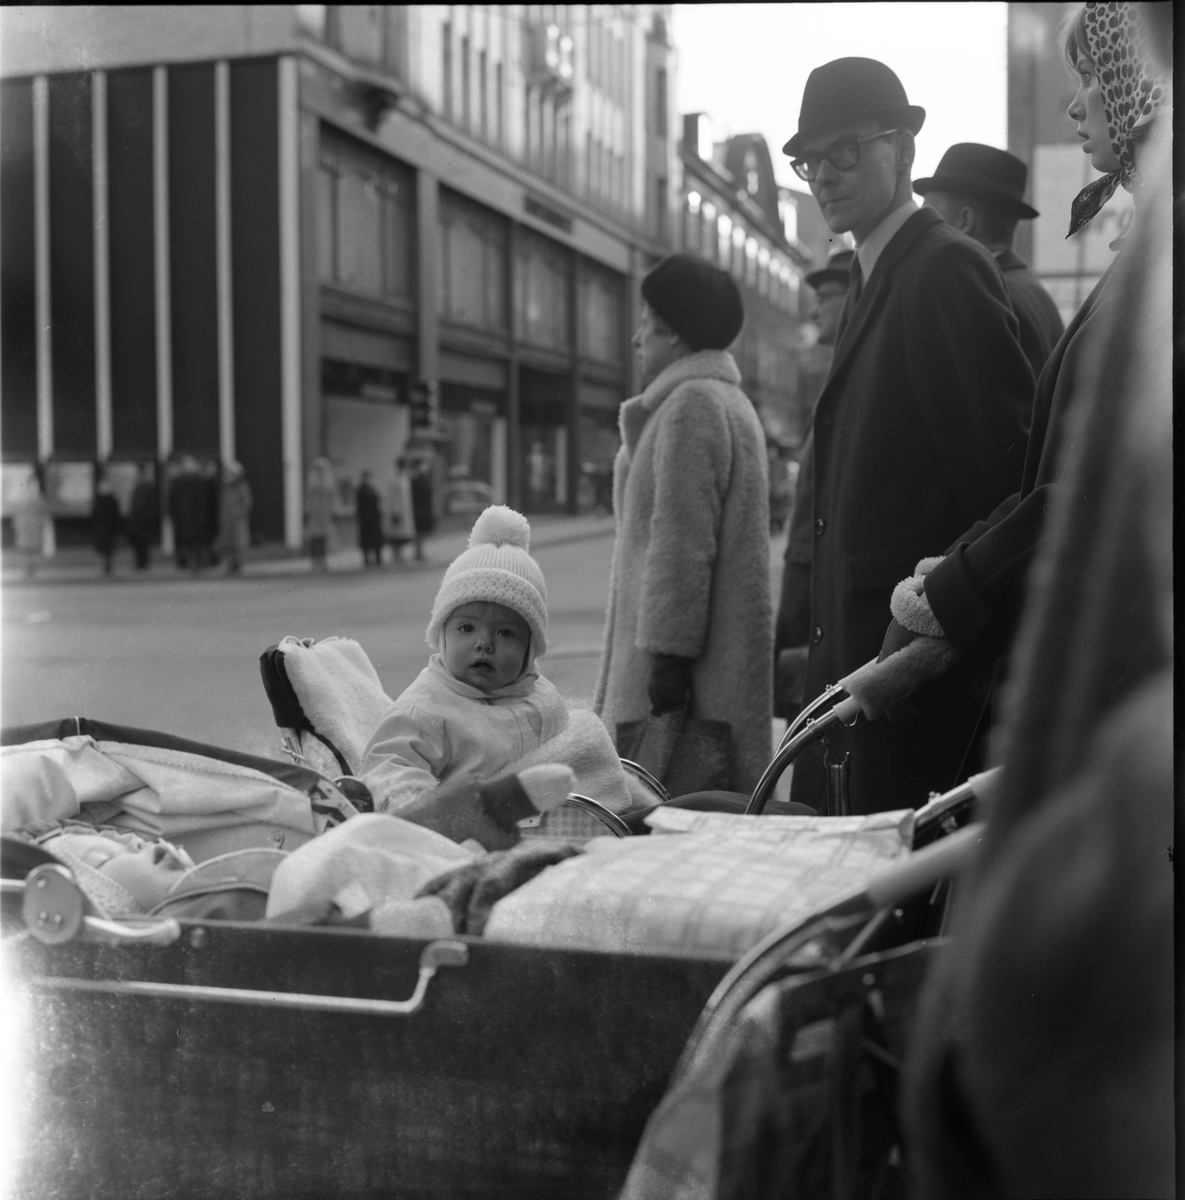 Väntande vid övergångsställe i stan, 1961